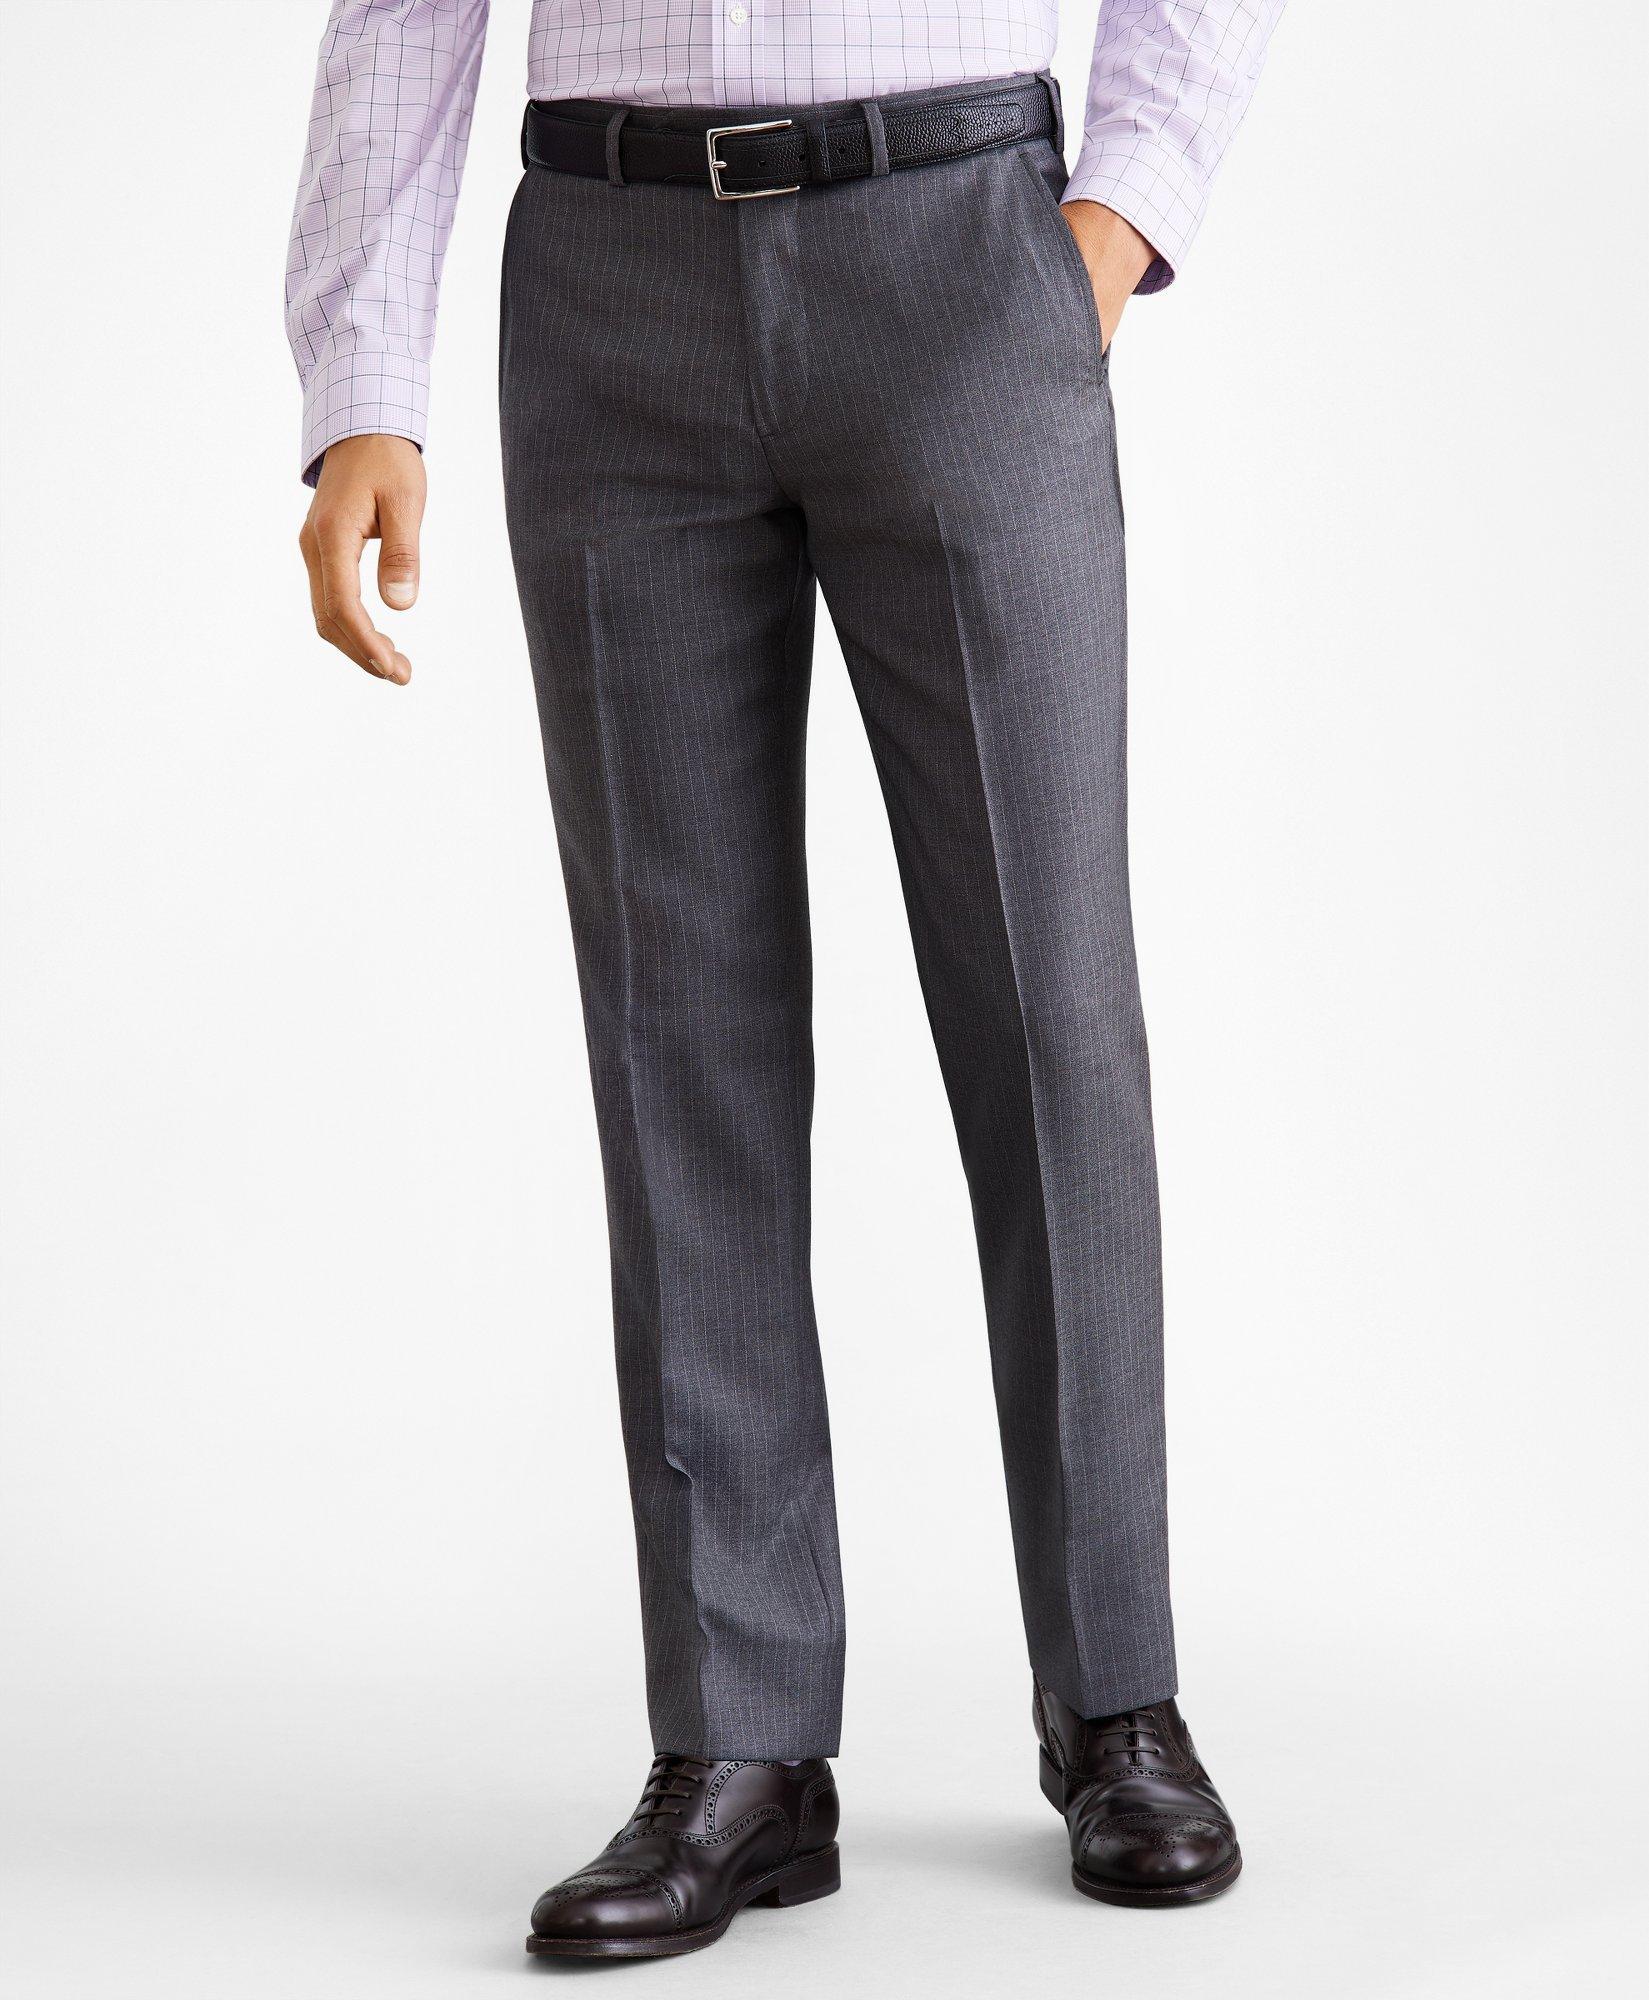 Regent Fit Two-Button Grey Stripe 1818 Suit